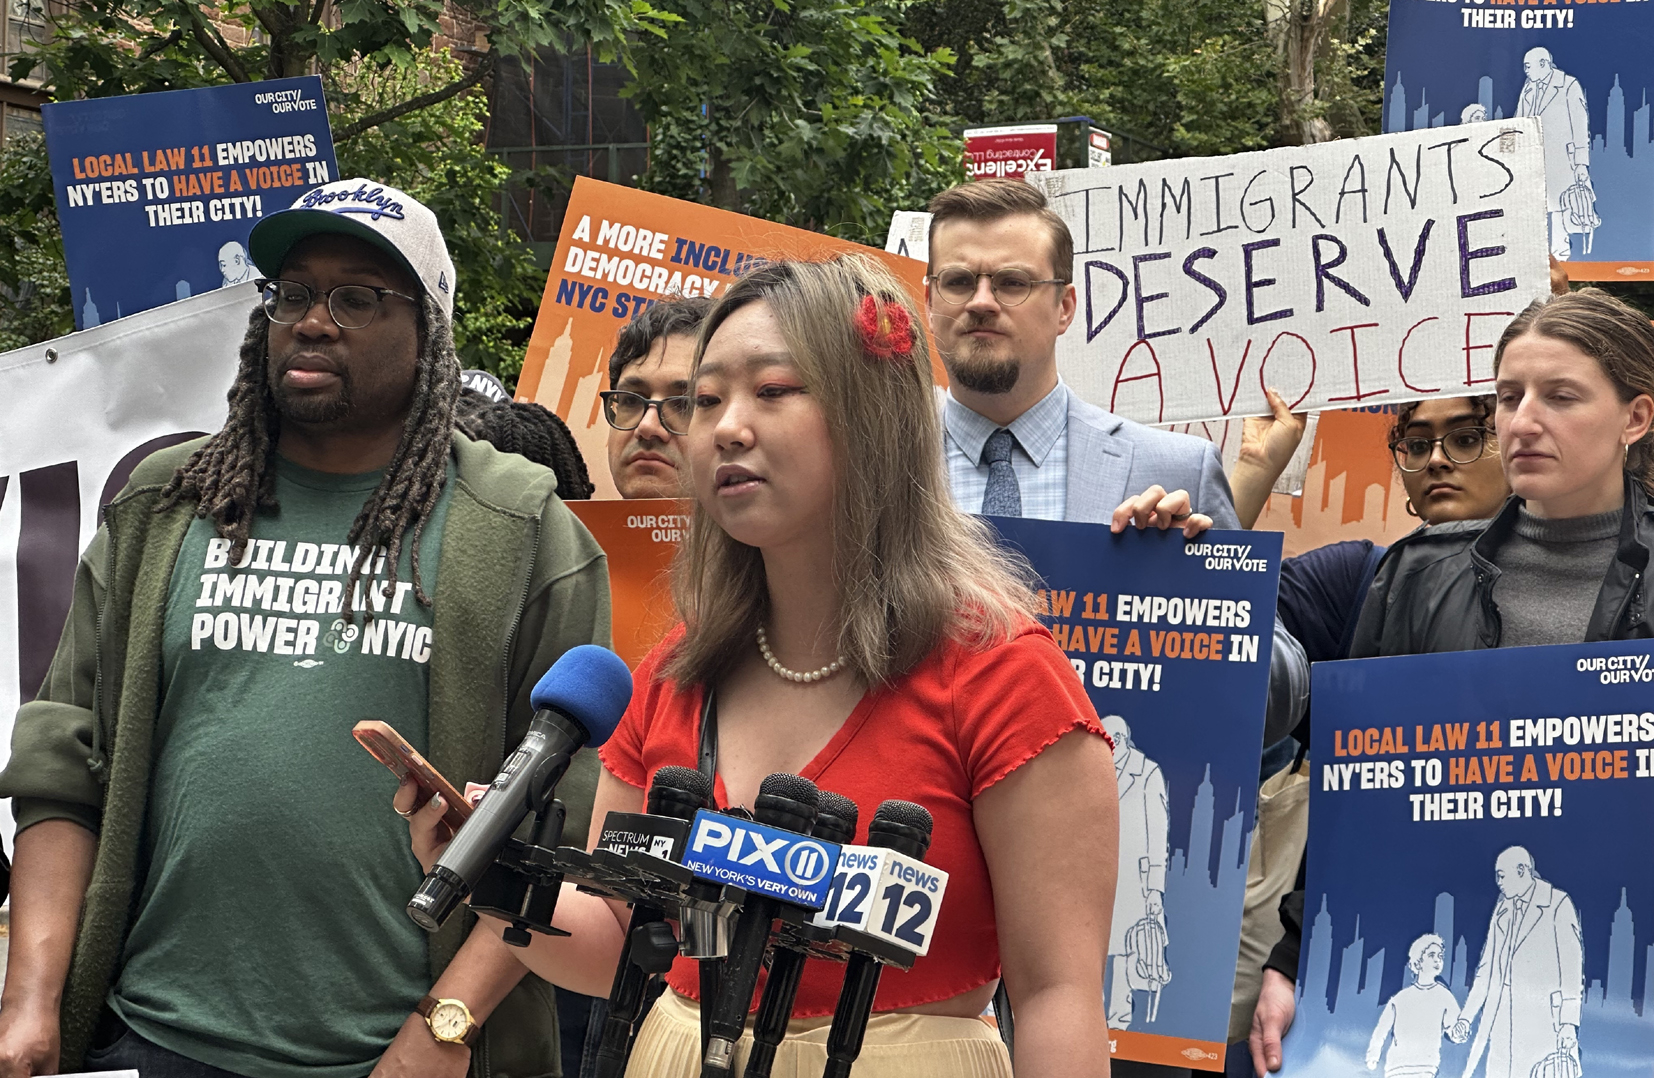  민권센터는 브루클린 지난 23일 뉴욕주 항소법원 앞에서 뉴욕시 이민자 투표권(뉴욕시 조례 11)을 지지하는 시위에 참여했다. 민권센터는 현재 이민자 투표권을 지키기 위한 서명운동도 펼치고 있다. [민권센터] 